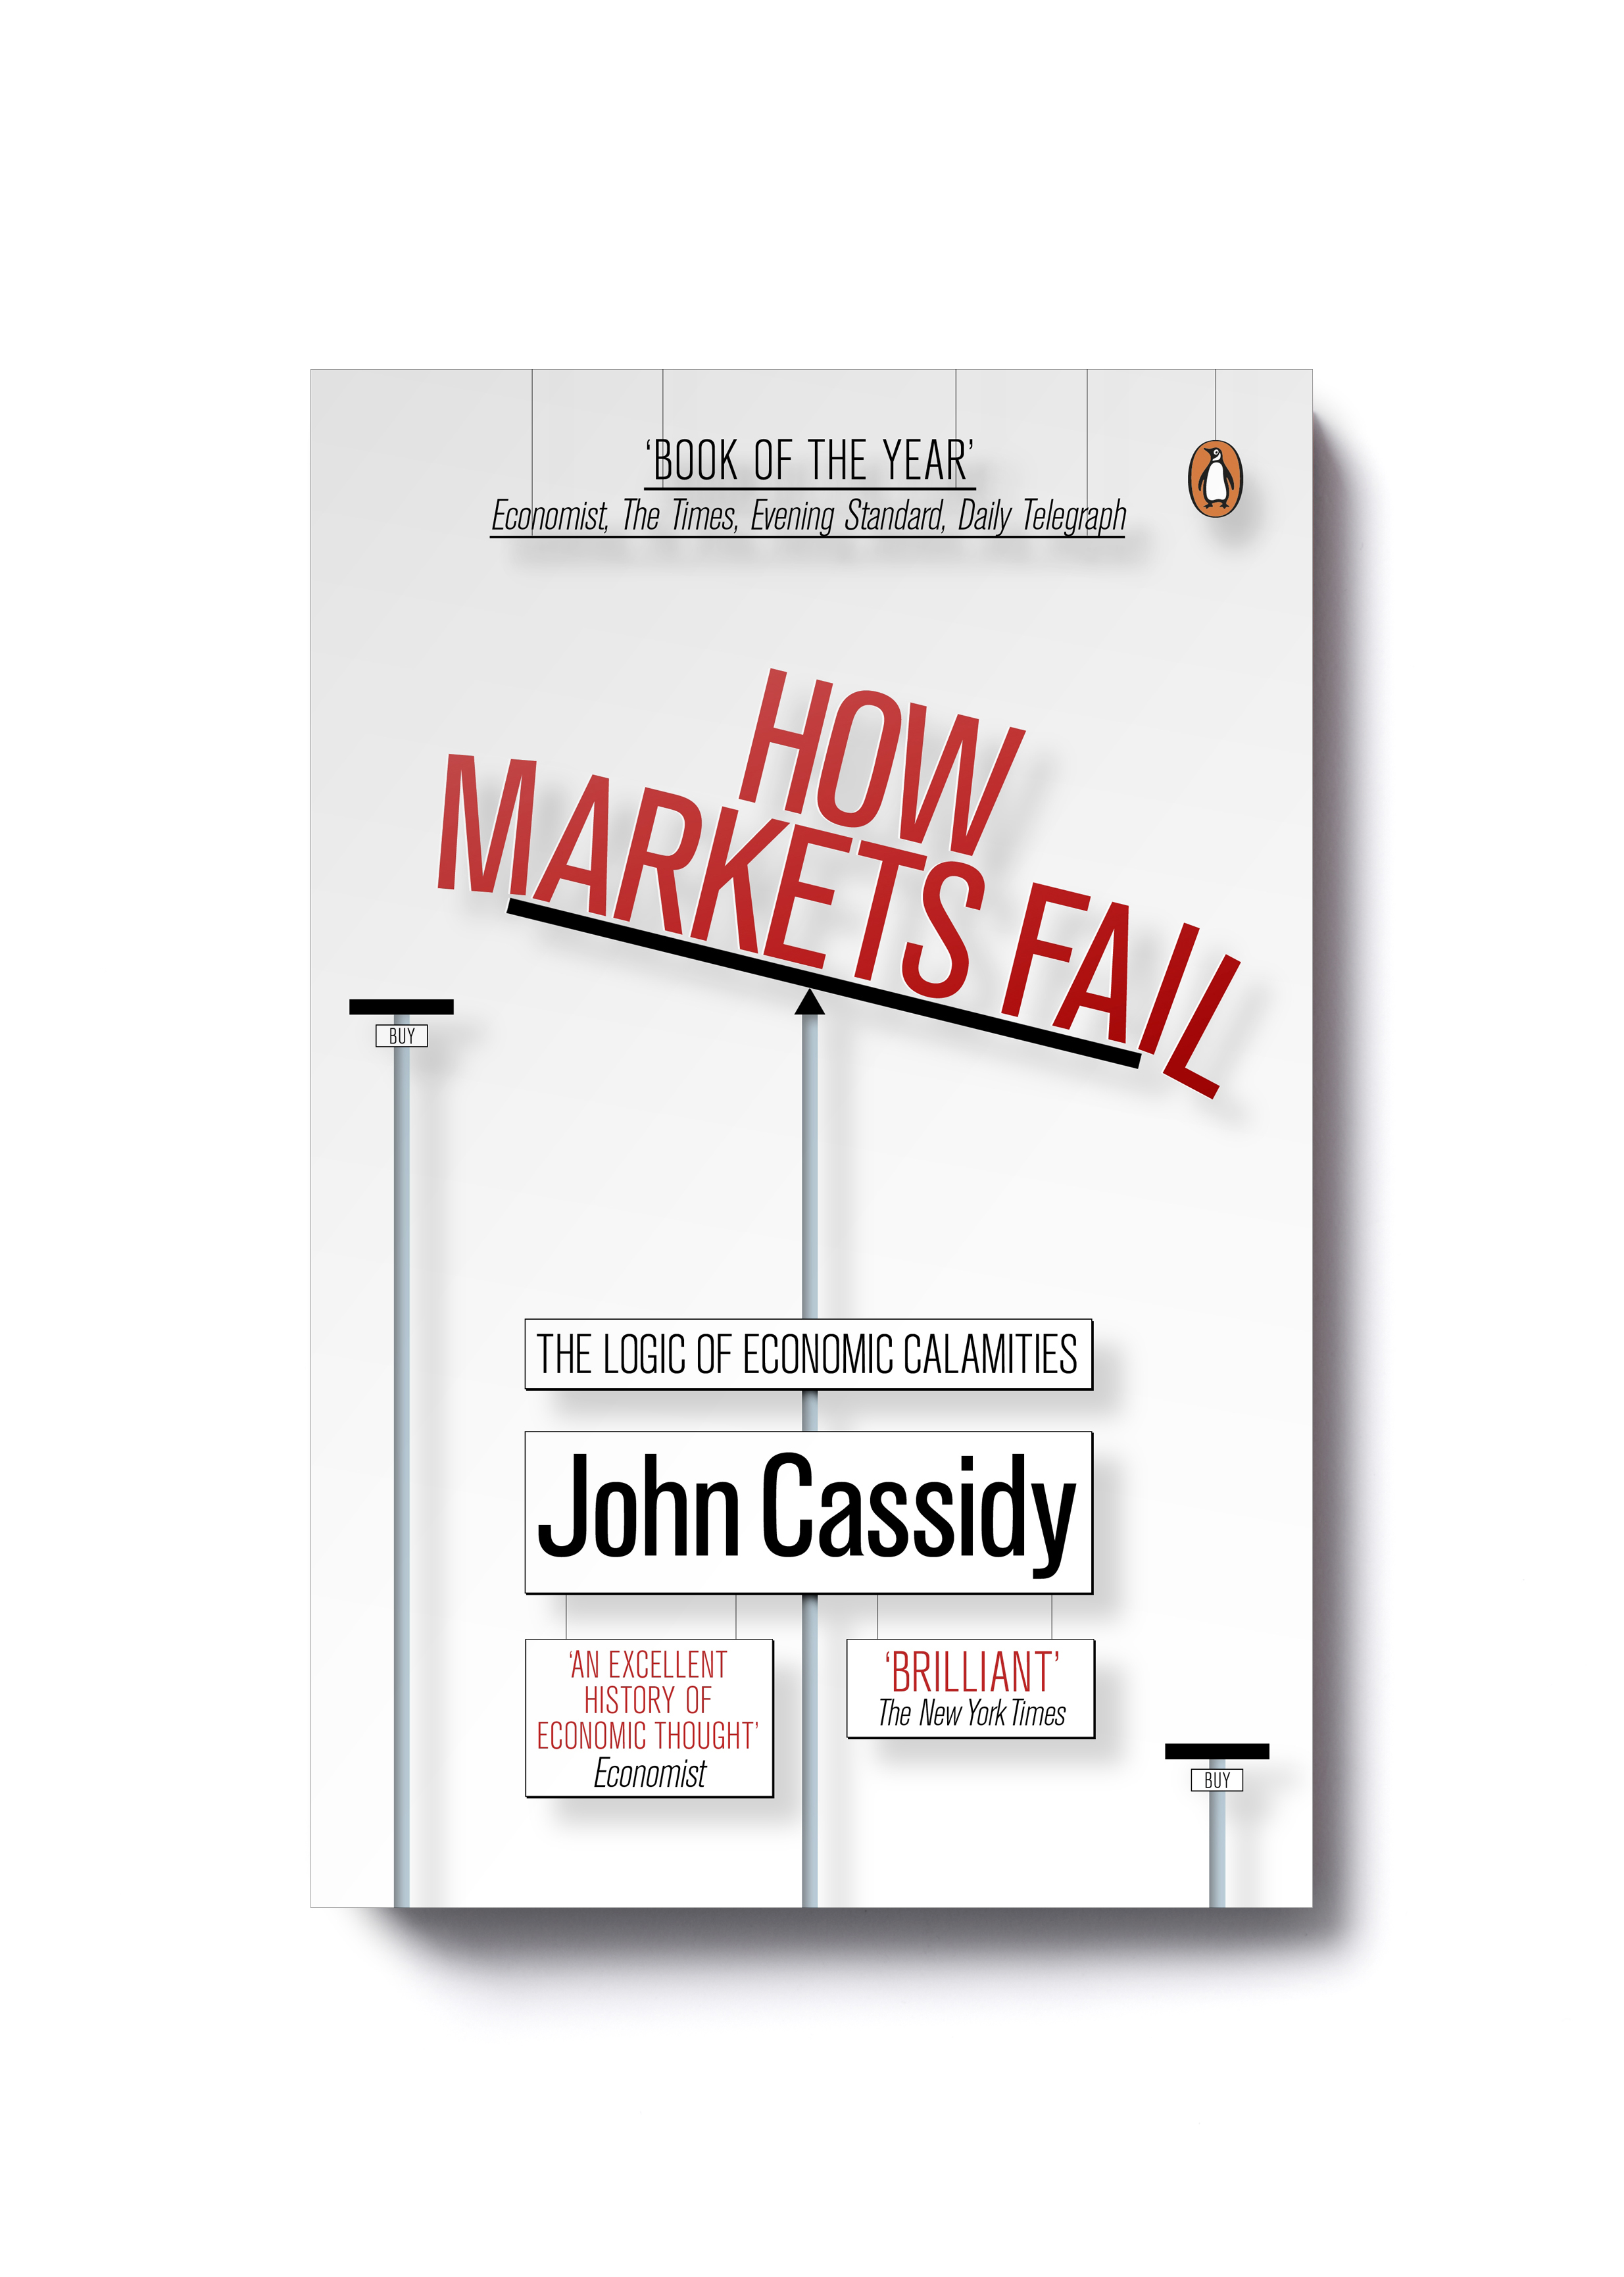  How Markets Fail by John Cassidy - Design: Jim Stoddart 